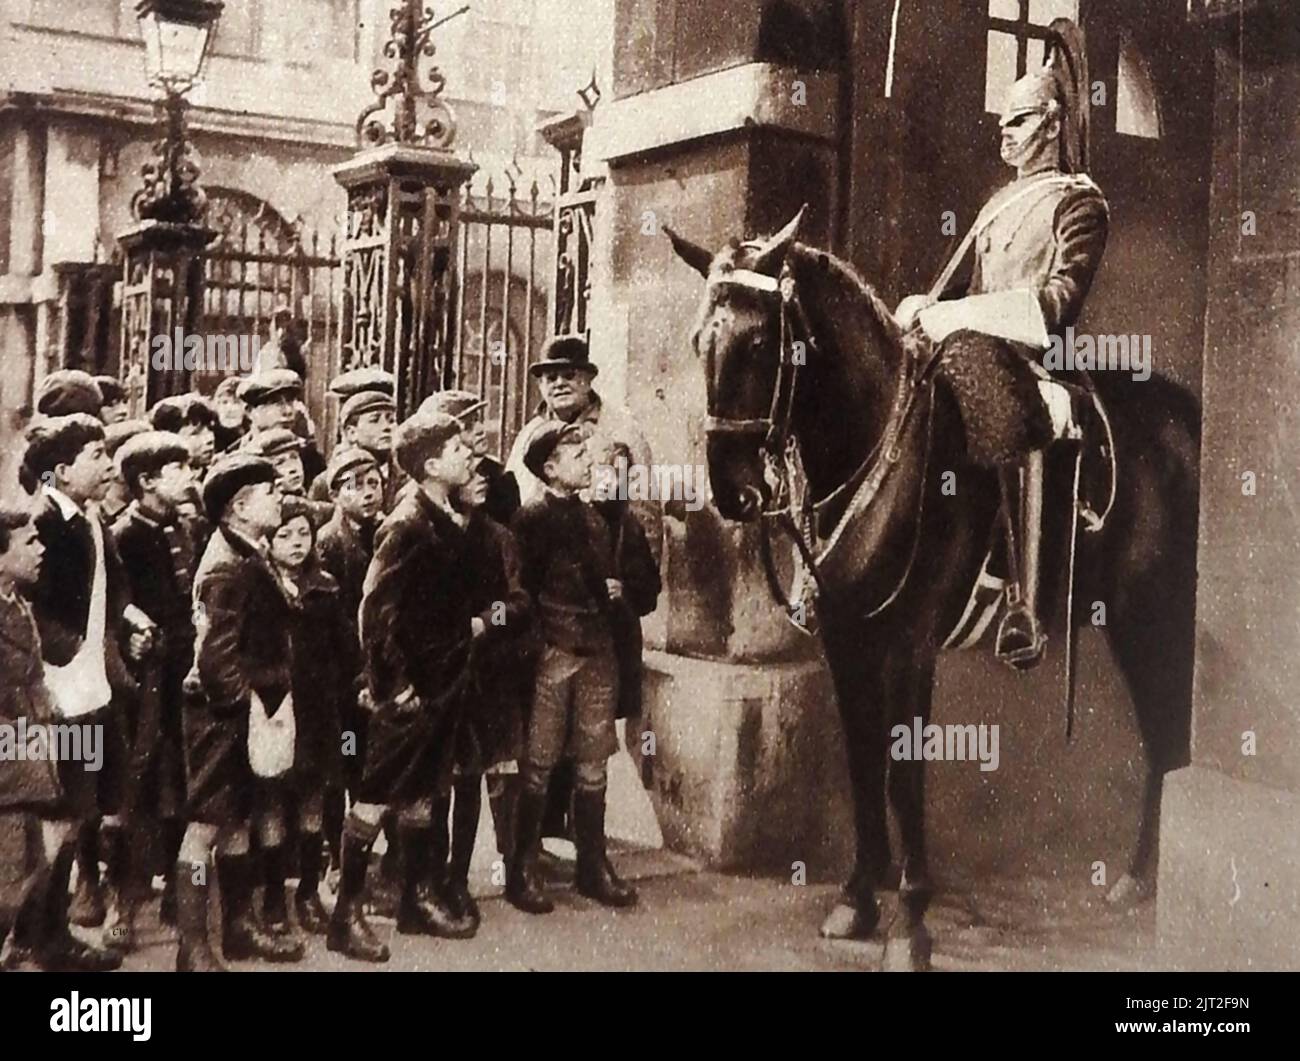 OLD LONDON - Una foto d'epoca che mostra un gruppo di scolari in visita che incontrano una guardia di cavalli alla Horse Guards Parade. Tutti i ragazzi indossano pantaloni corti e berretti piatti, un tempo una moda spesso tradizionale in Gran Bretagna , indossati da ragazzi al di sotto degli undici anni prima di frequentare la scuola superiore. Foto Stock